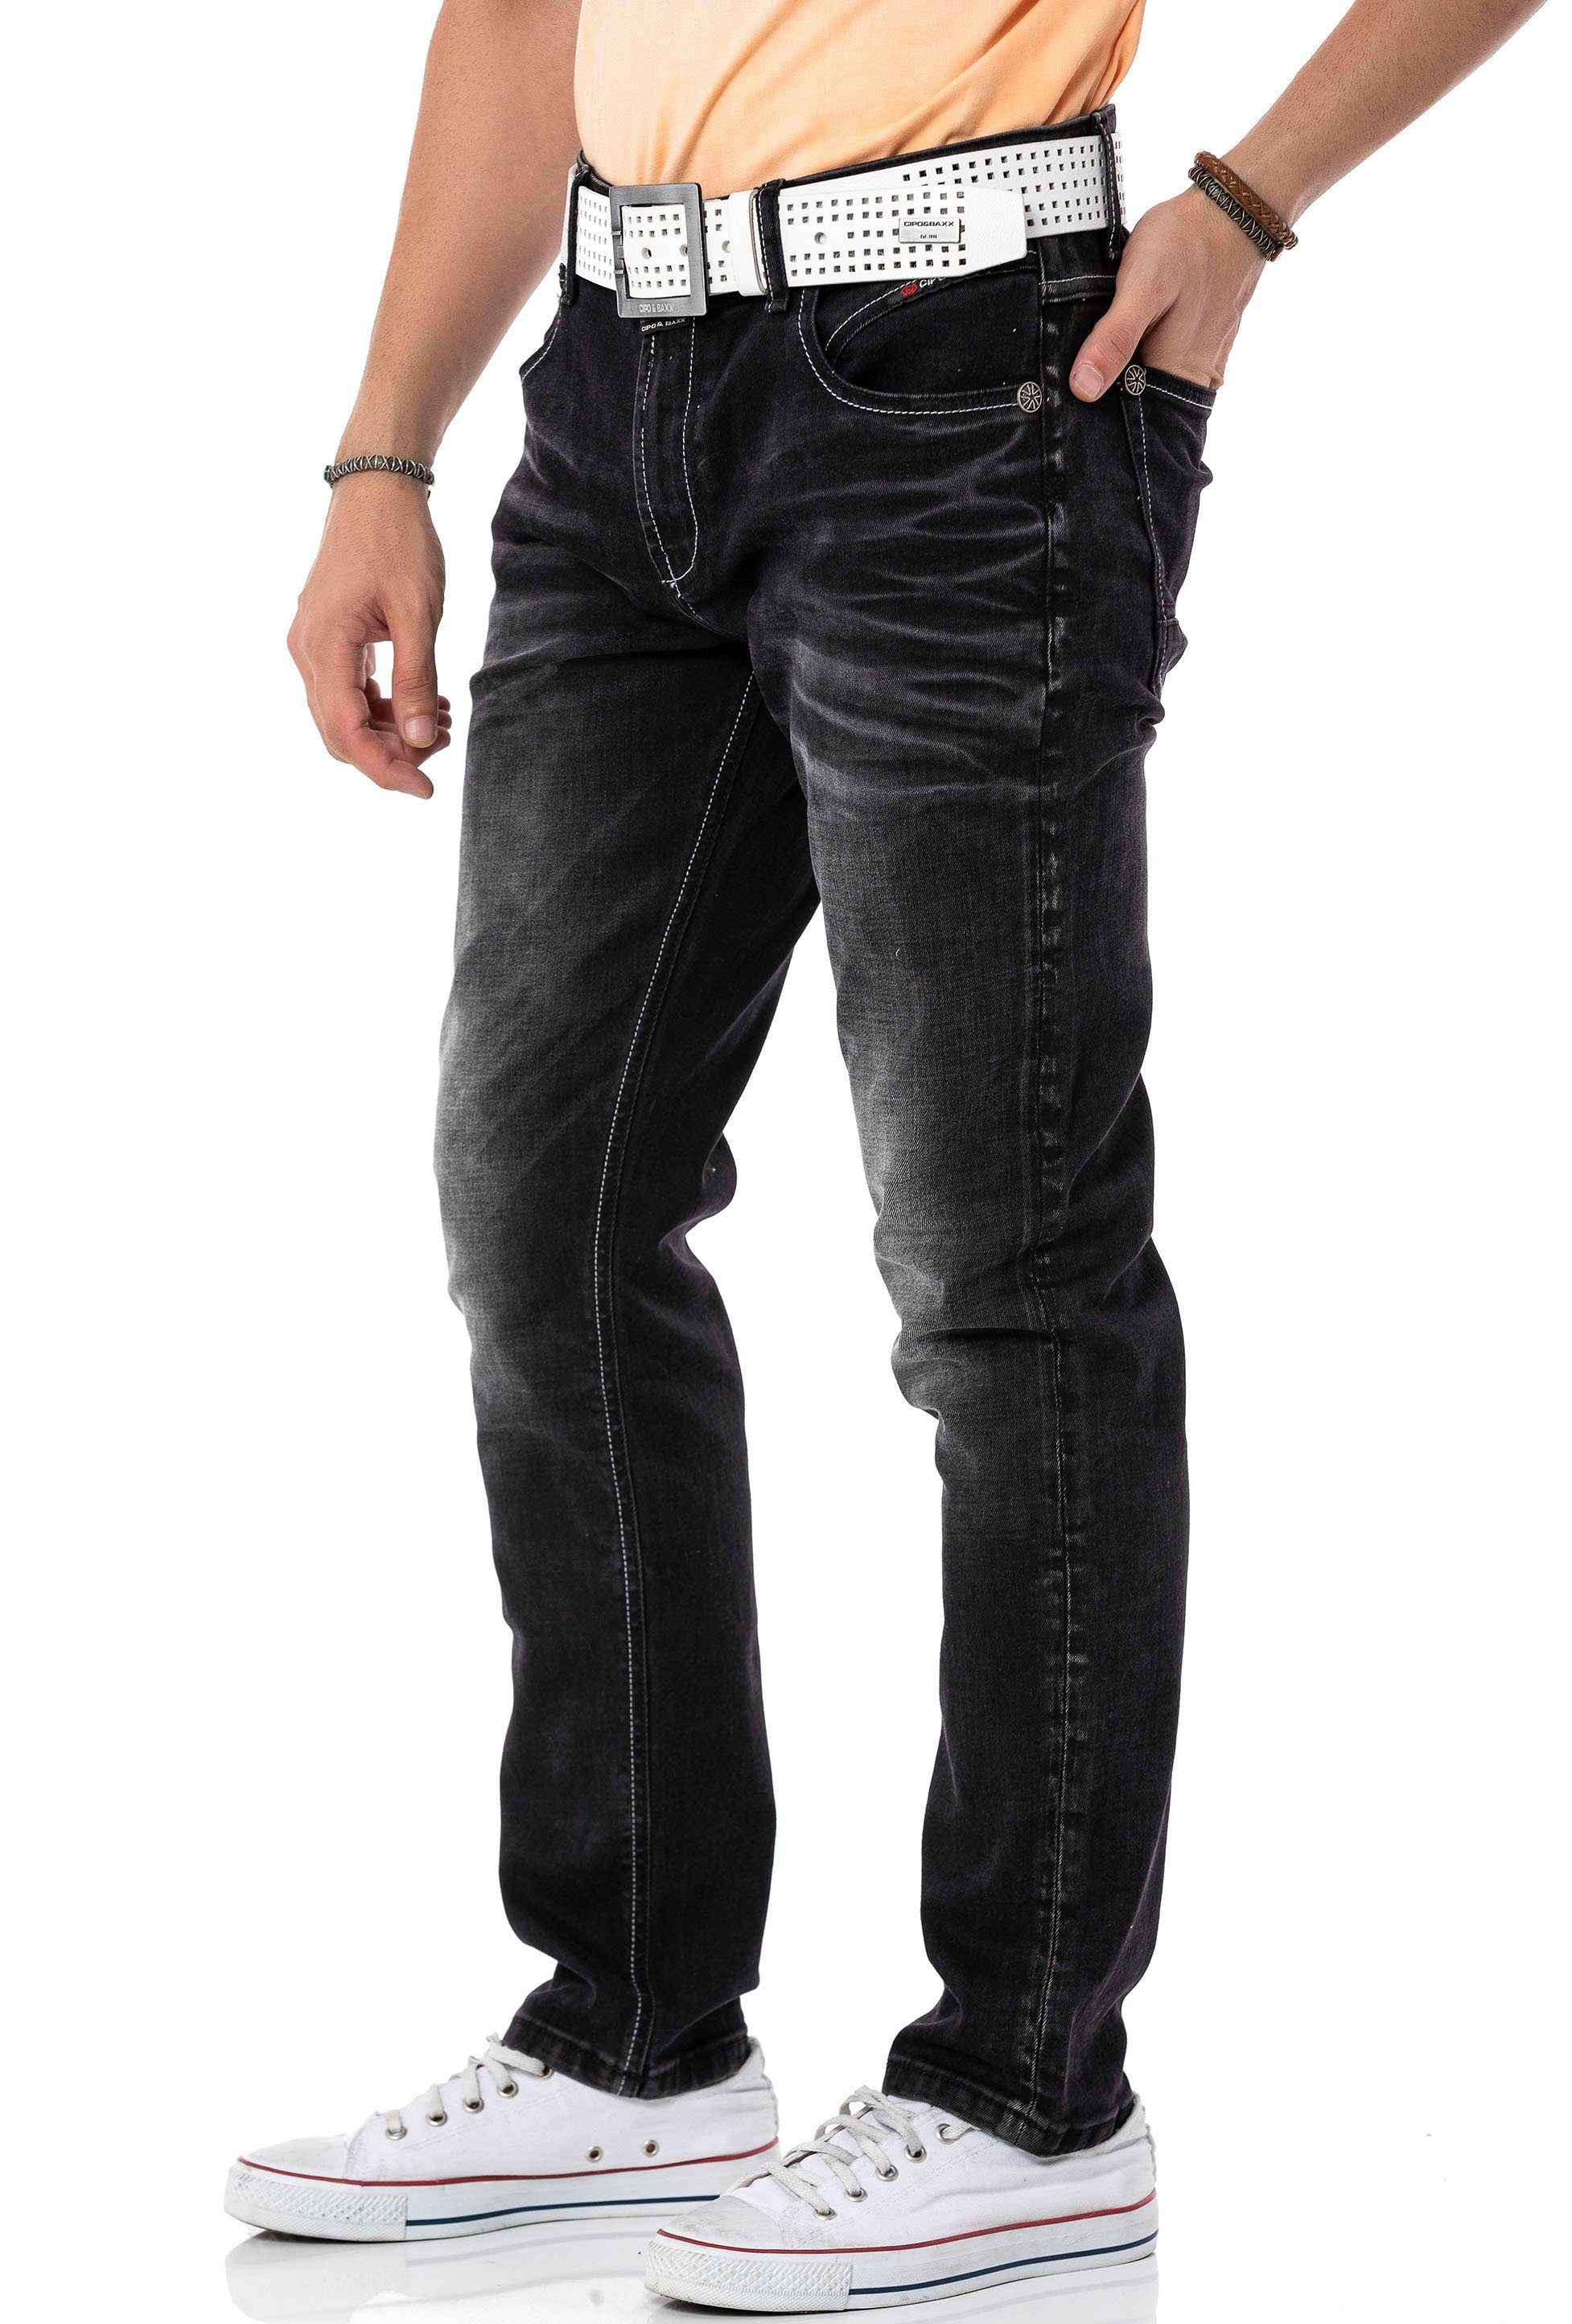 Baxx & Regular-fit-Jeans Cipo